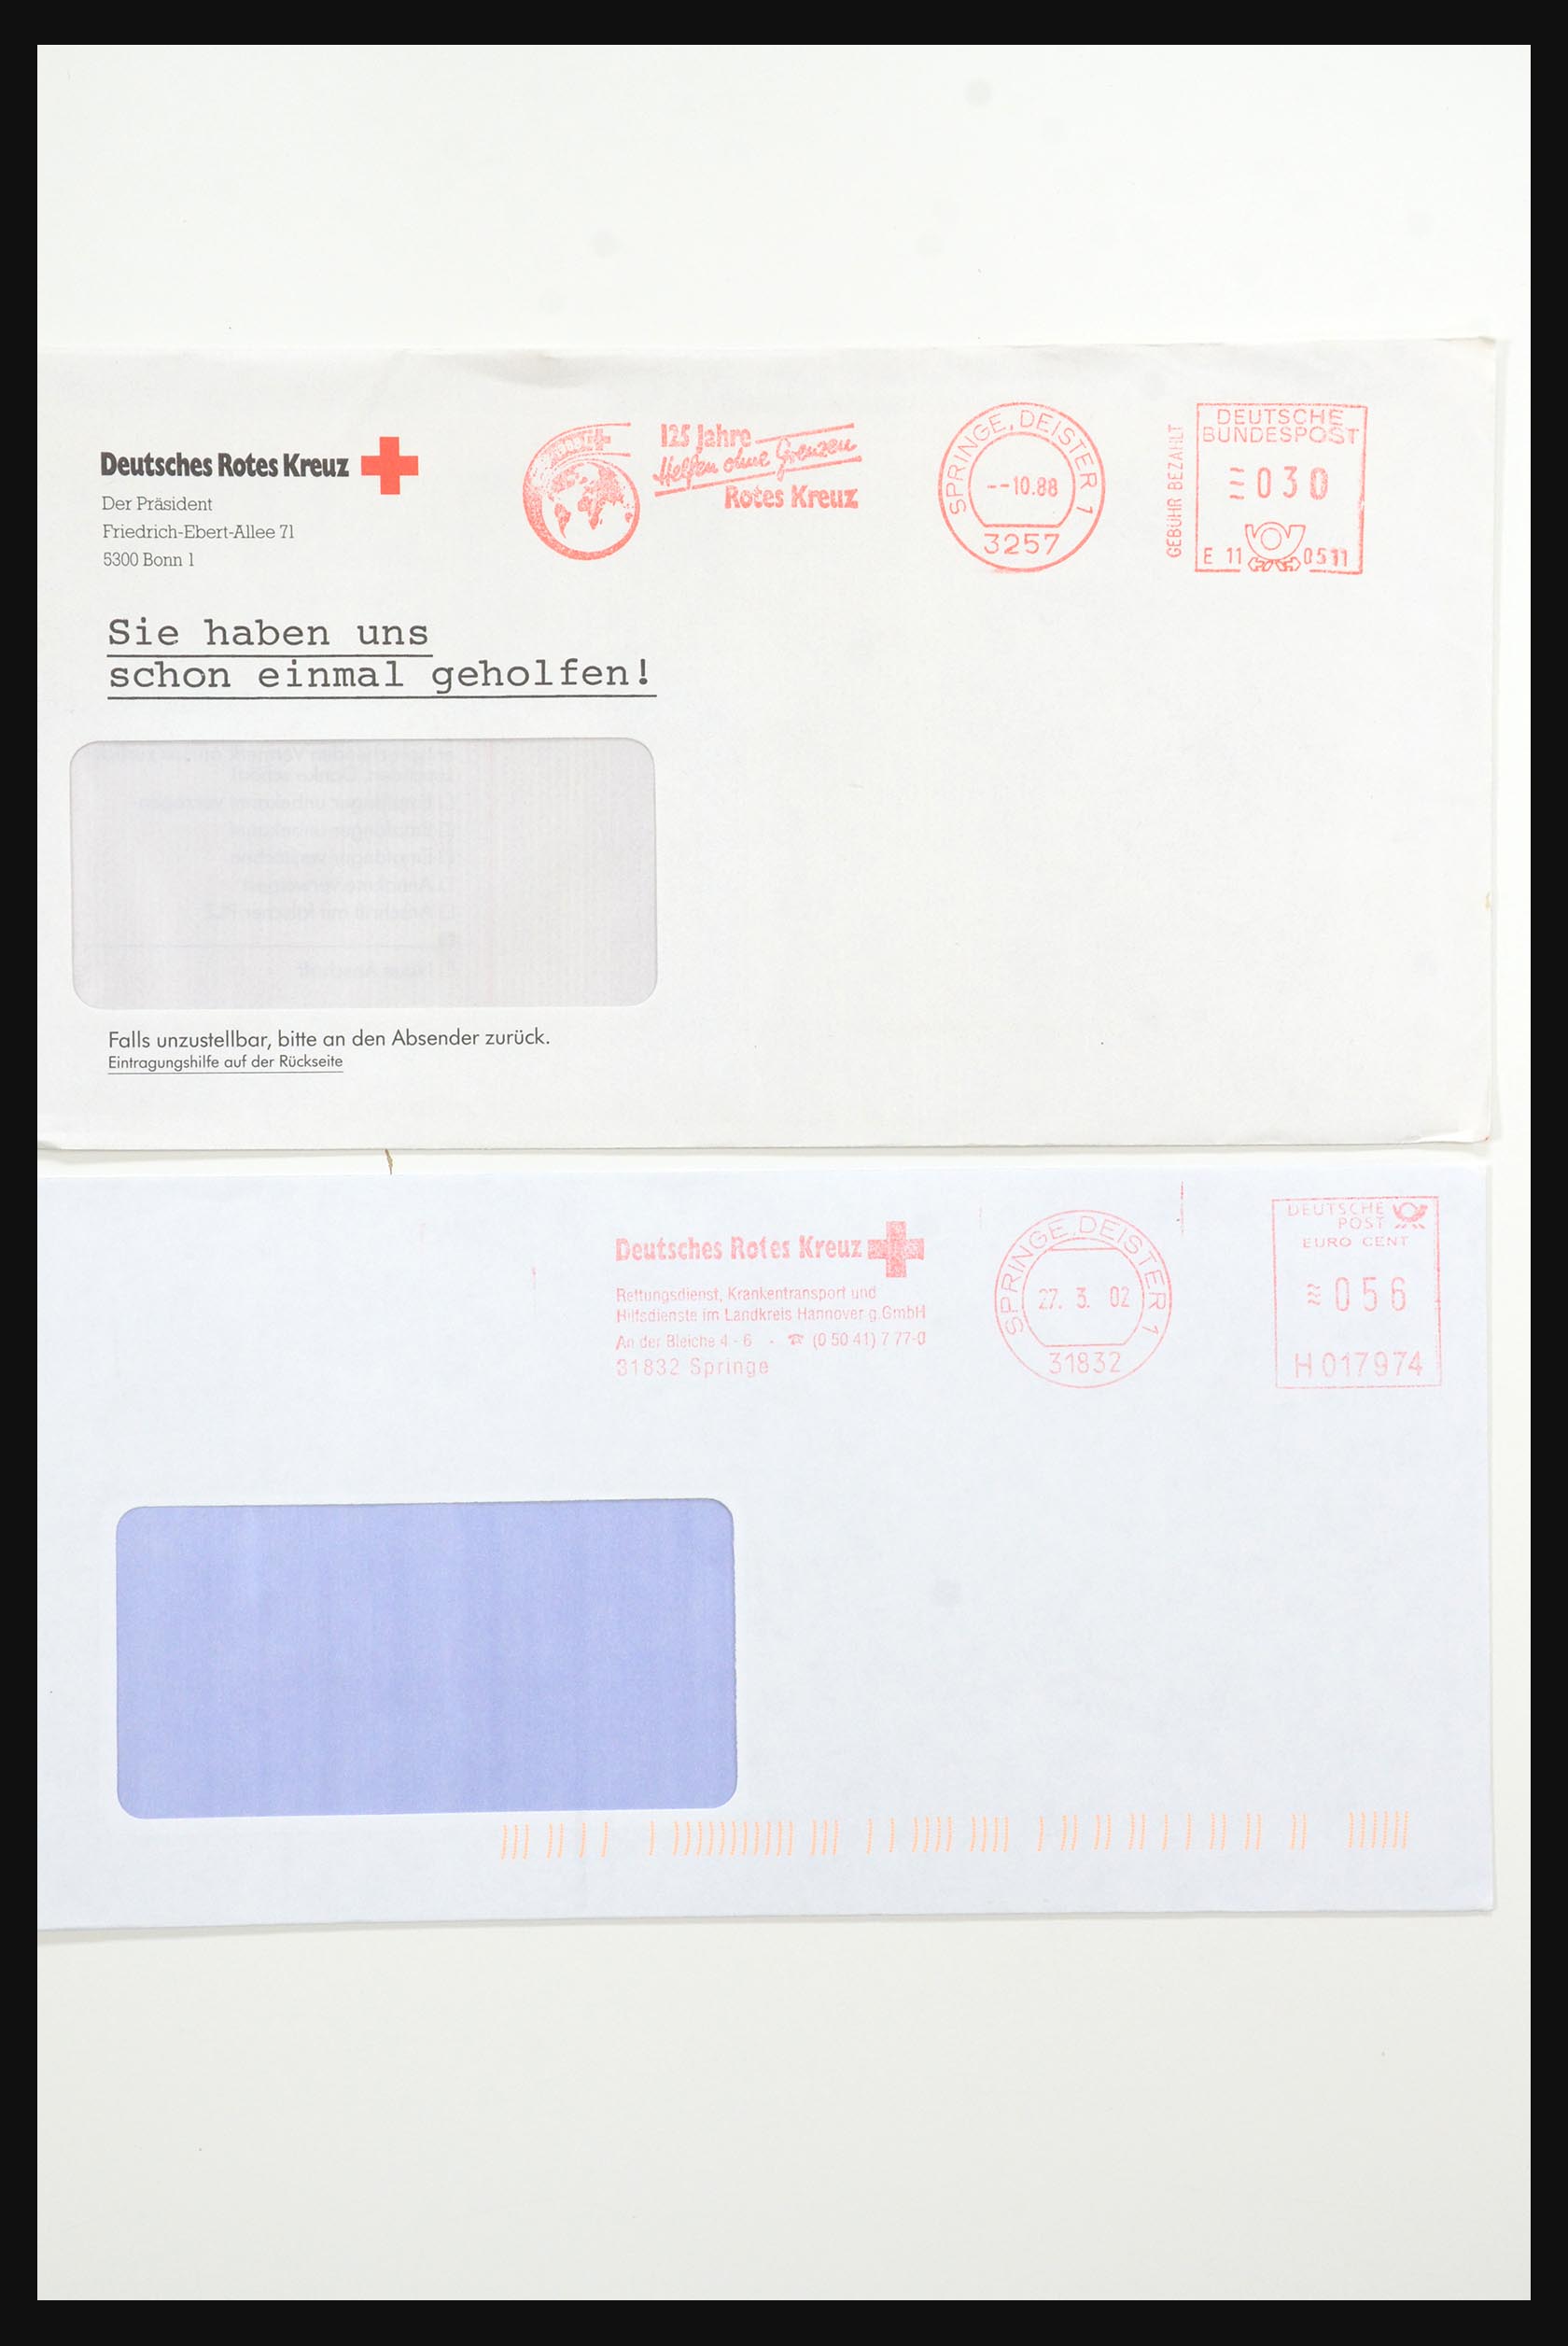 31365 1062 - 31365 Rode kruis brieven 1905-1975.